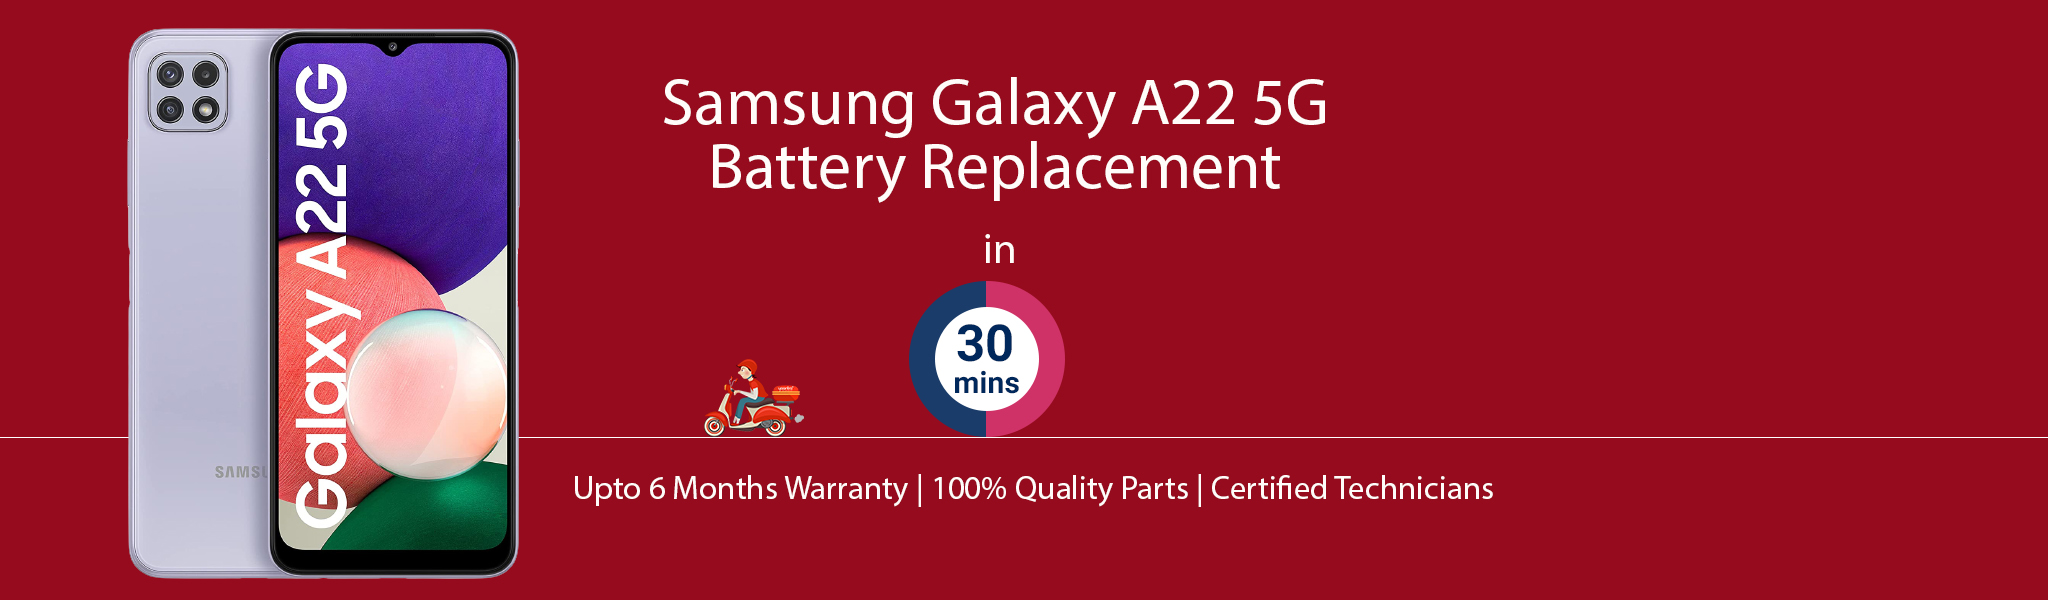 samsung-galaxy-a22-5g-battery-replacement.jpg